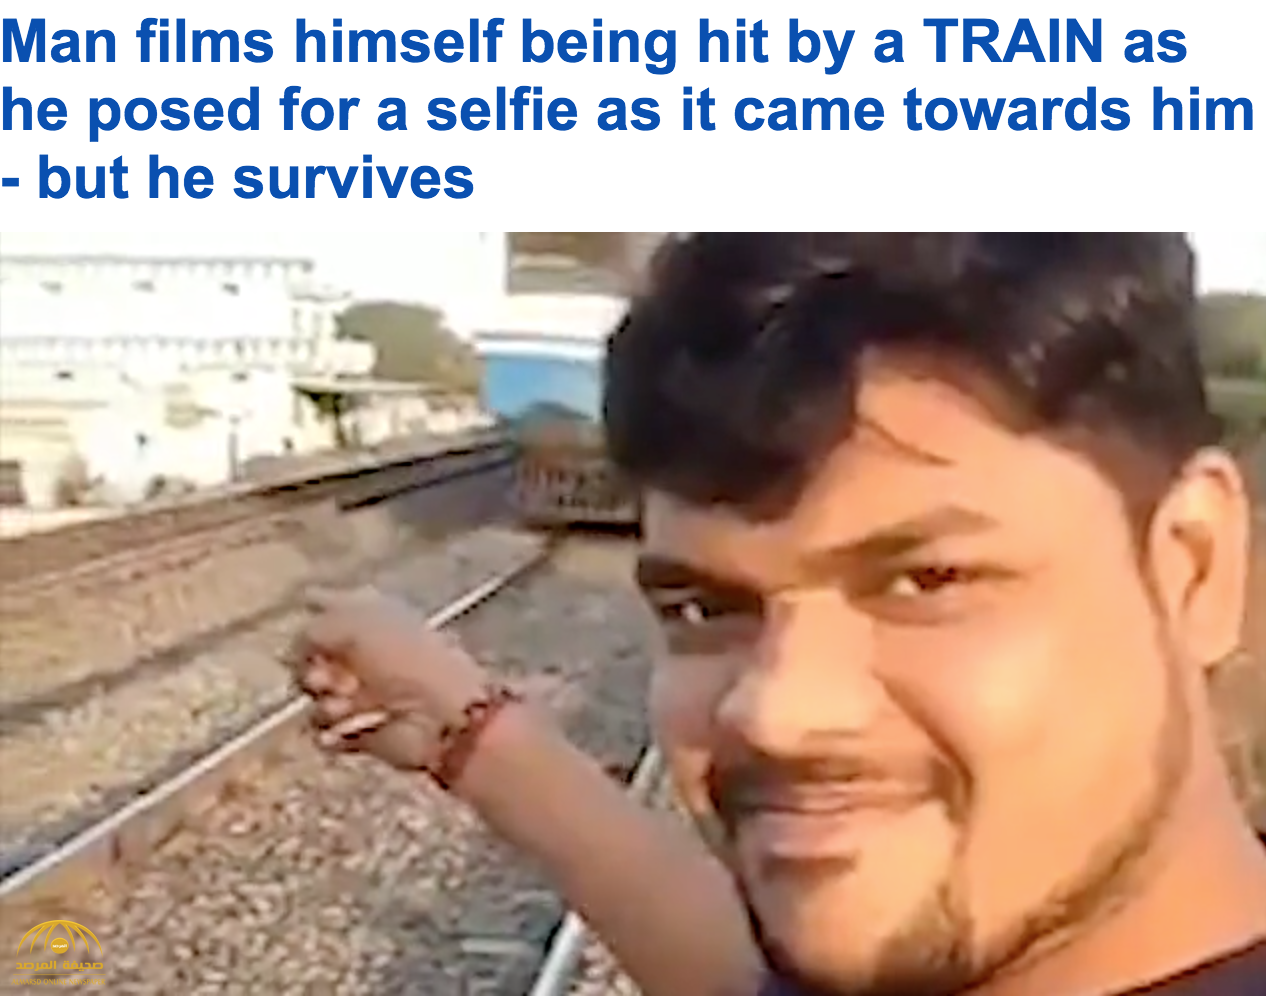 فيديو : هندي وقف أمام قطار ليصور "سلفي"... شاهد النهاية !